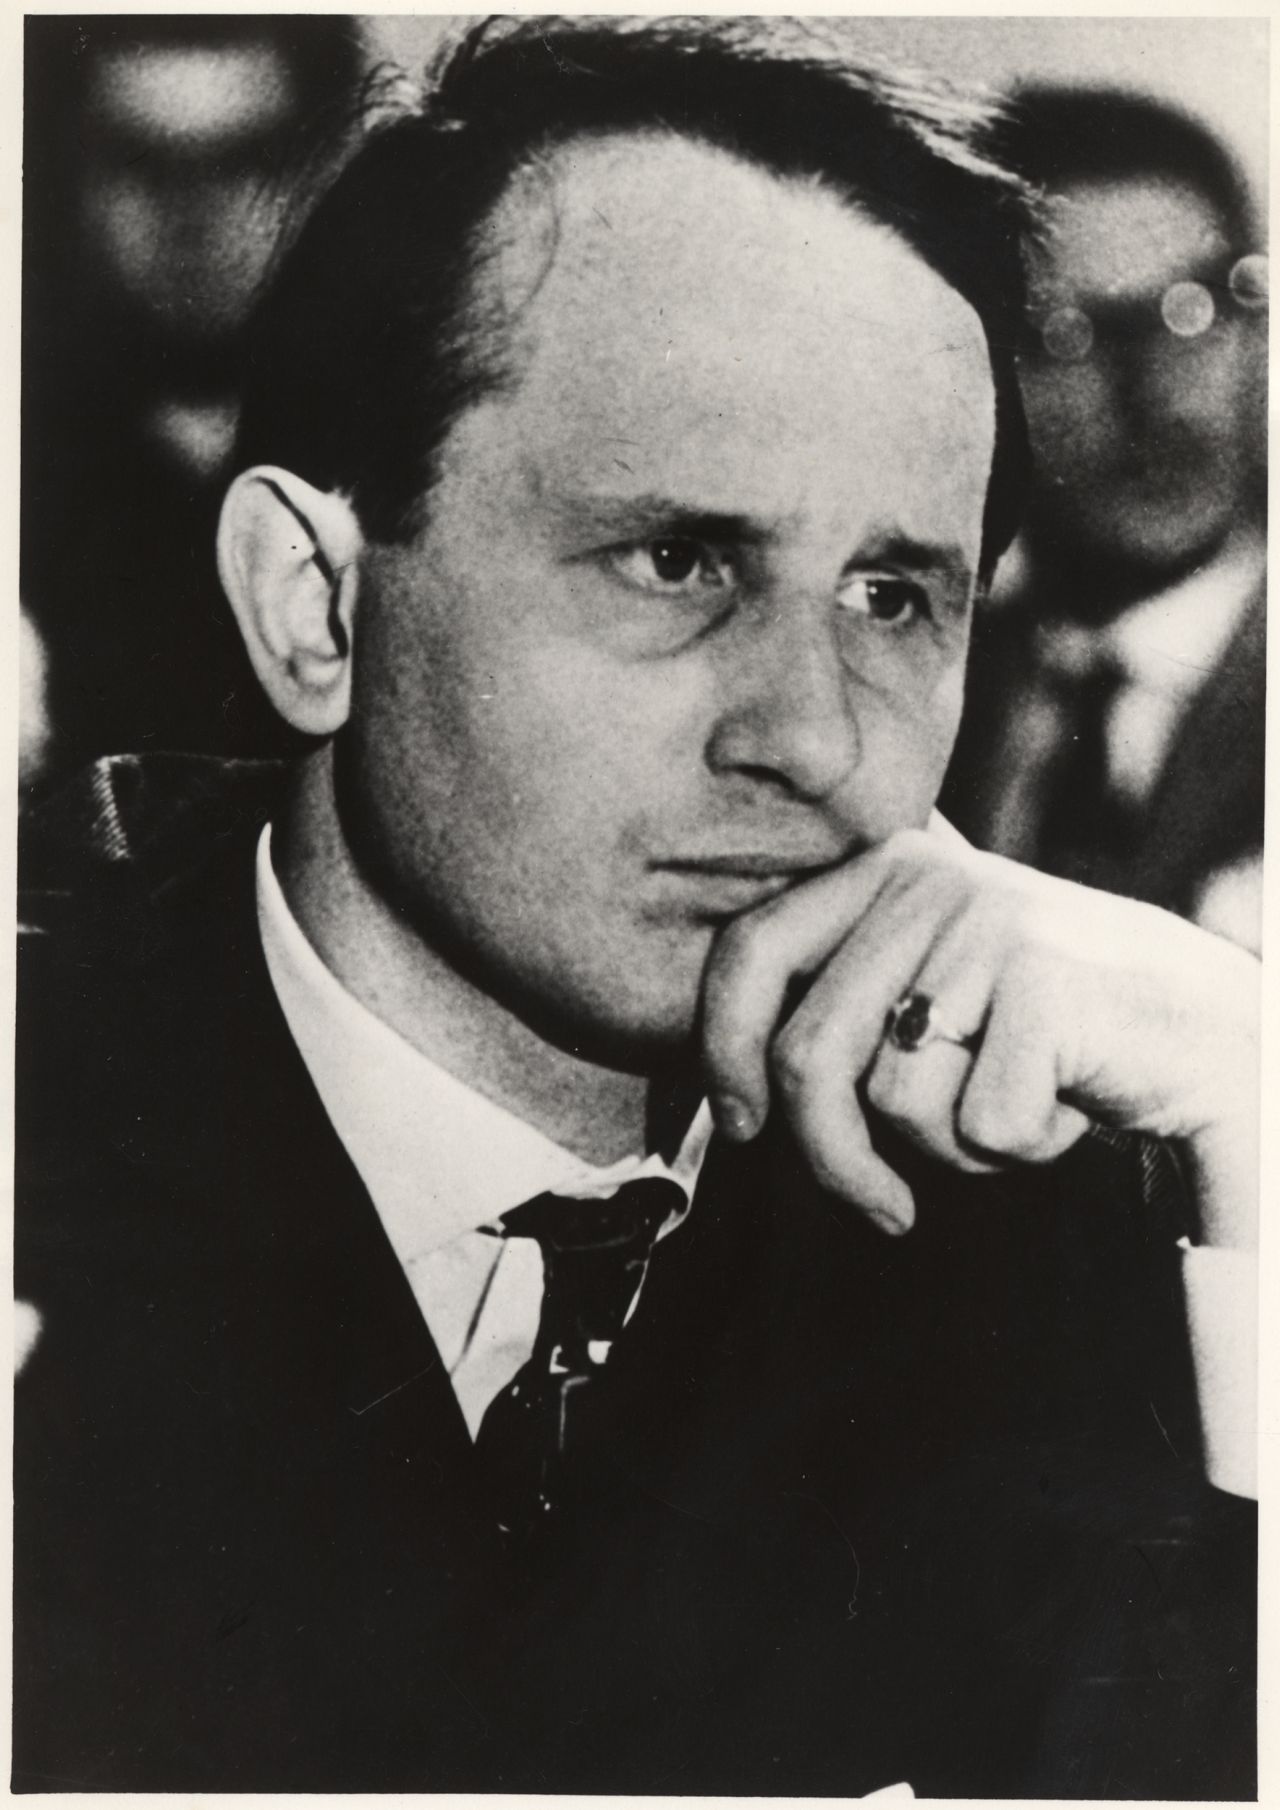 Porträtbild des Schriftstellers und Dramatikers Rolf Hochhuth, um 1965.